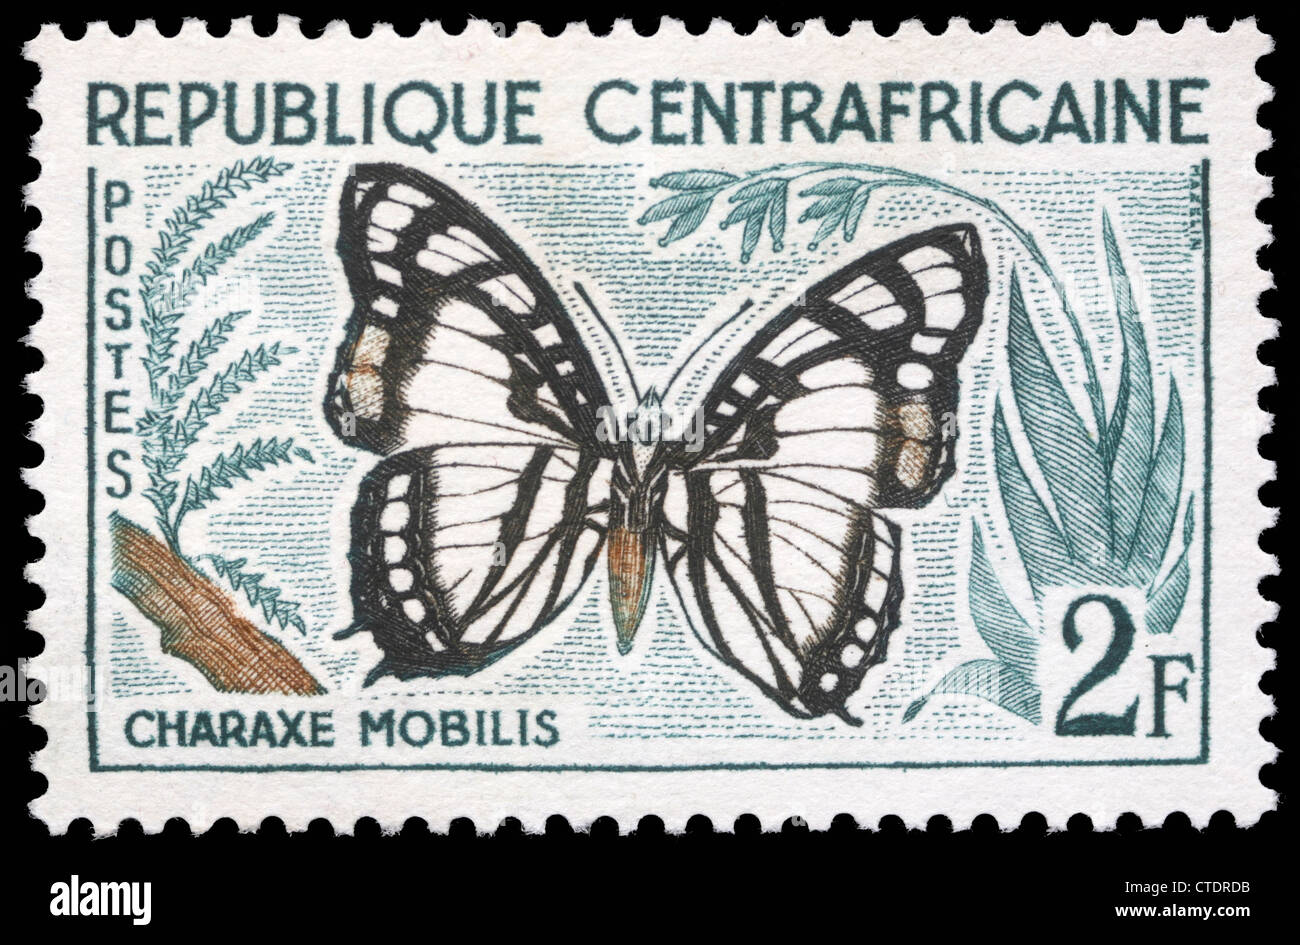 Repubblica Centrafricana - circa 1960:un timbro stampato nella Repubblica Africana Centrale mostra una farfalla, Charax Mobilis, circa 1960 Foto Stock